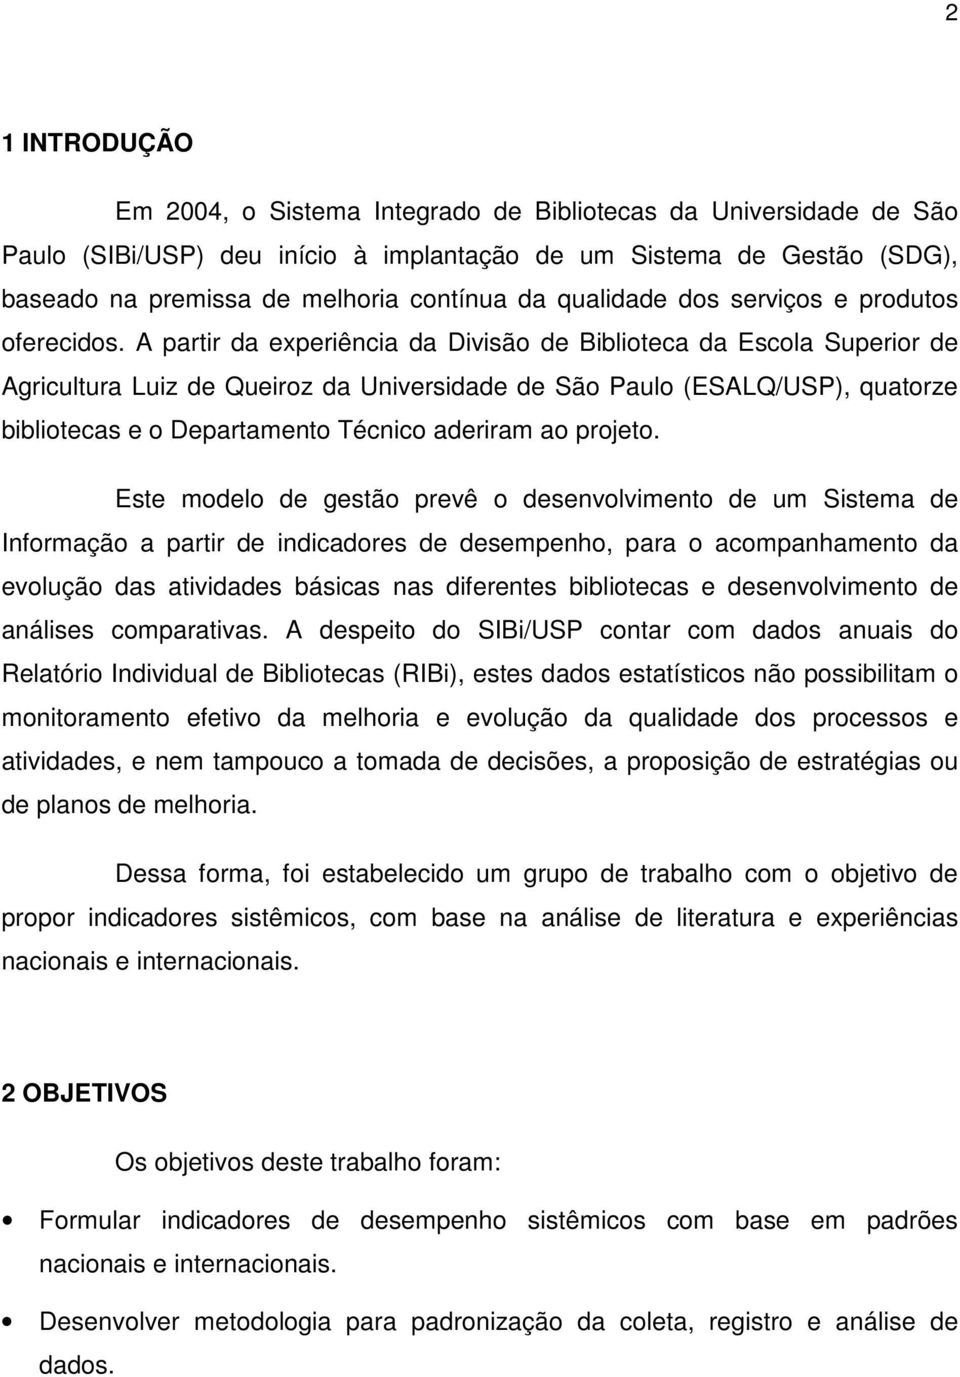 A partir da experiência da Divisão de Biblioteca da Escola Superior de Agricultura Luiz de Queiroz da Universidade de São Paulo (ESALQ/USP), quatorze bibliotecas e o Departamento Técnico aderiram ao